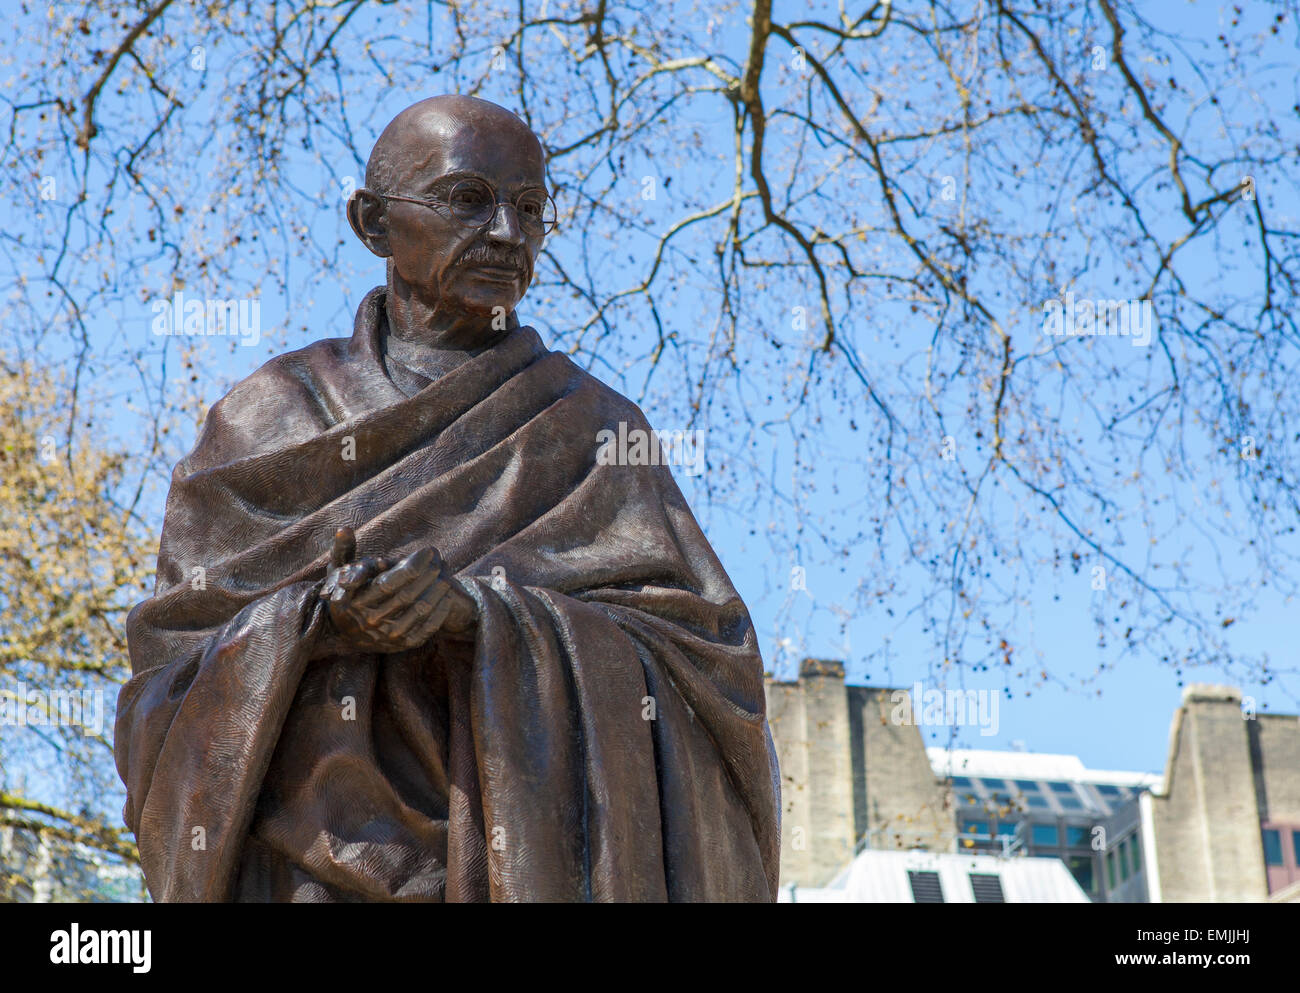 Une statue du Mahatma Gandhi situé sur la place du Parlement à Londres. Banque D'Images